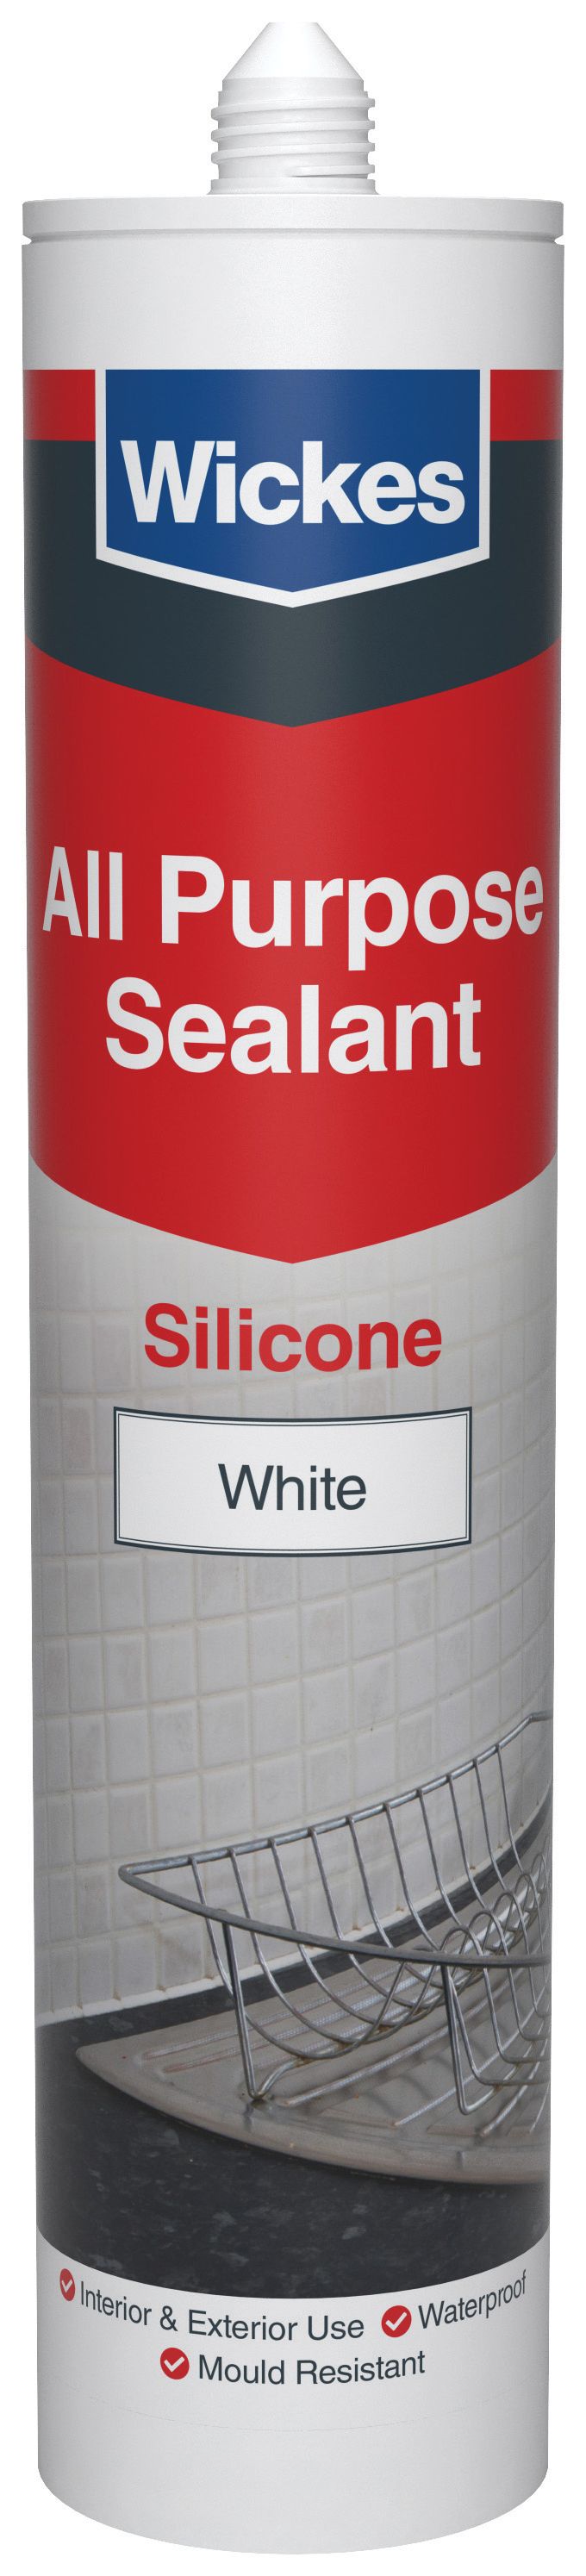 Image of Wickes All Purpose Silicone Sealant White 300ml